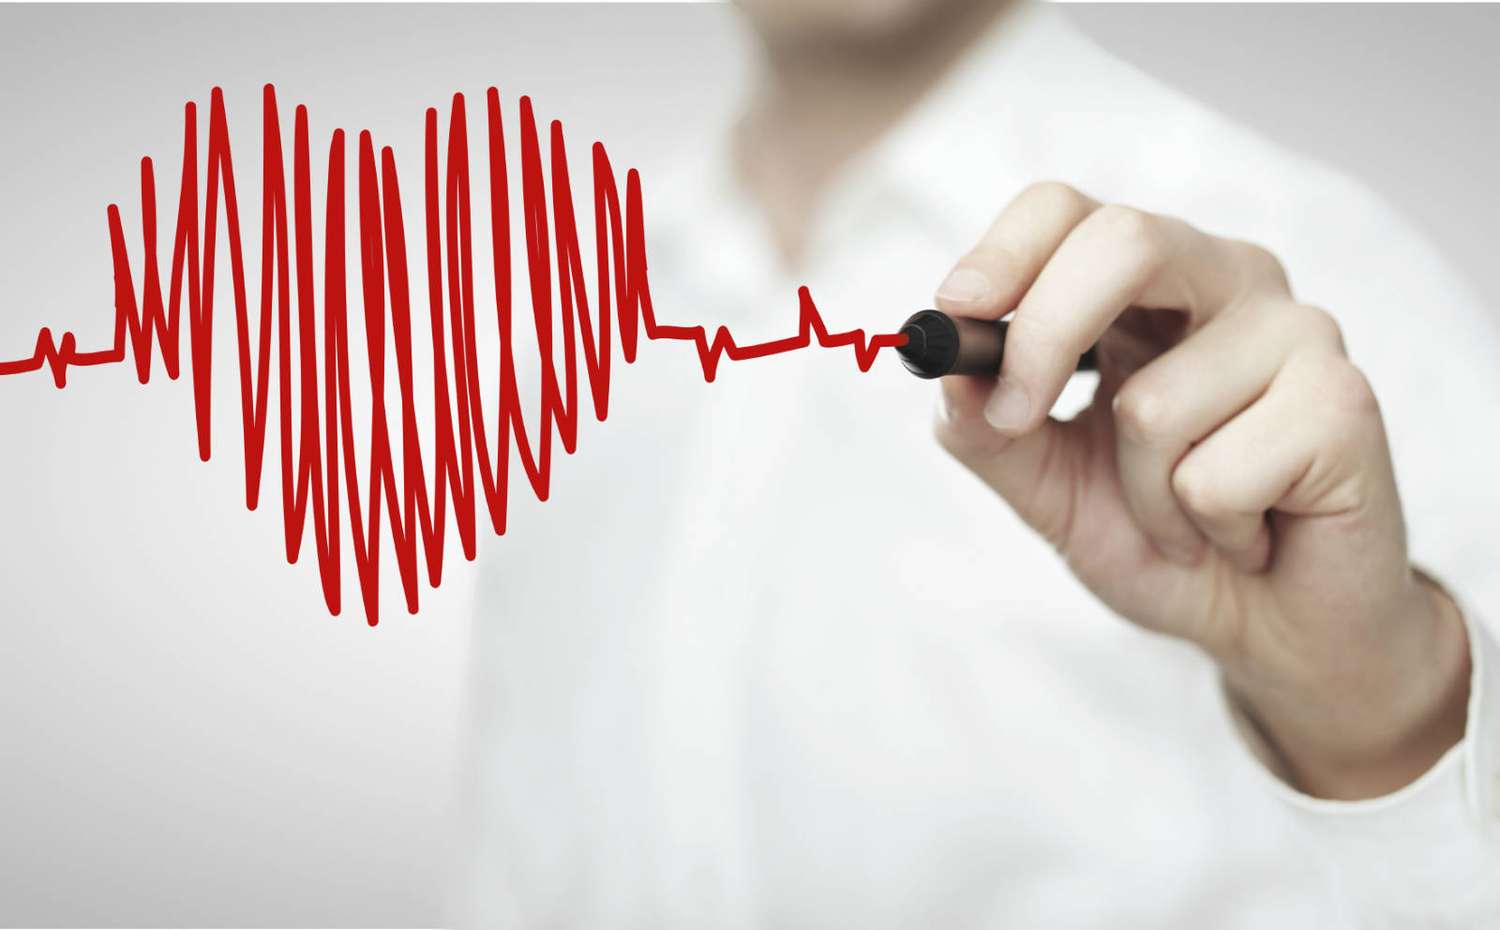 Las enfermedades cardiovasculares representan la primera causa de muerte a nivel mundial